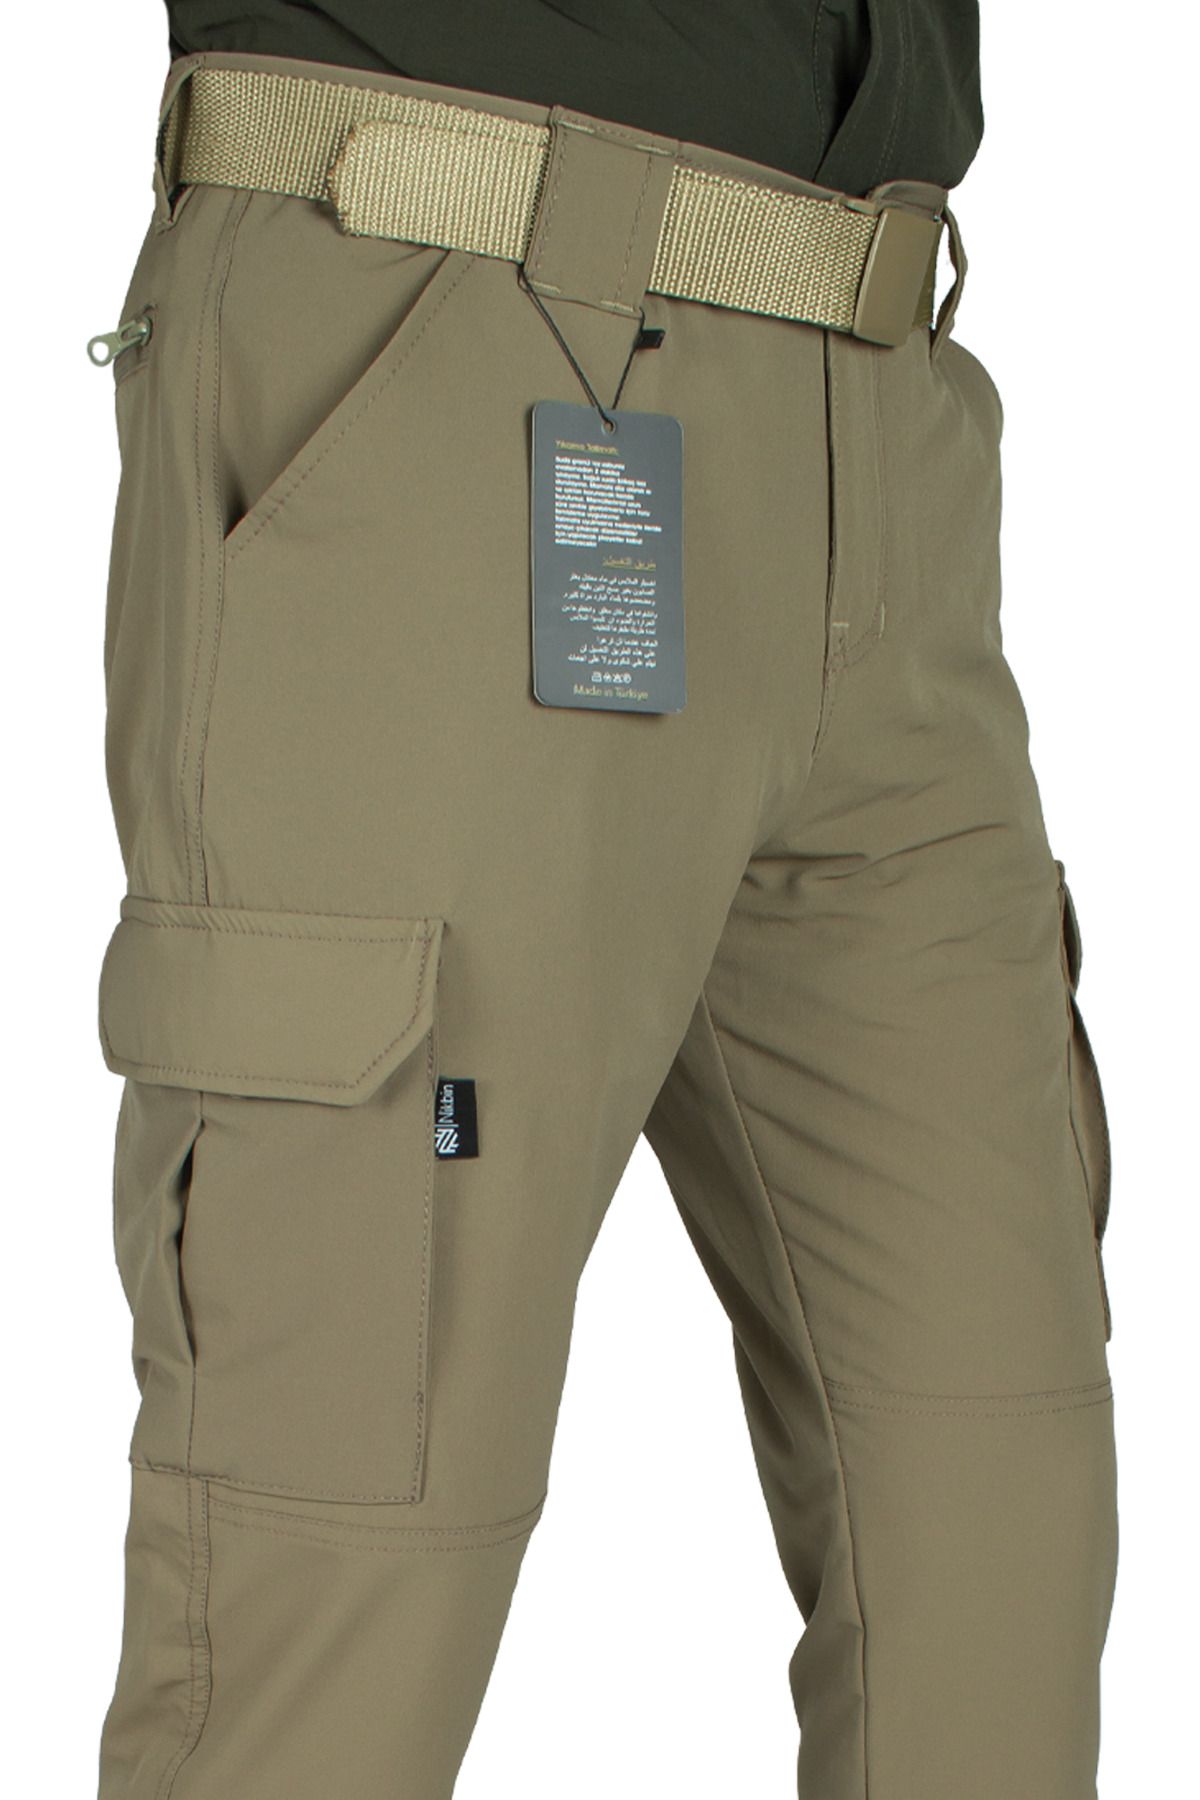 Nikbin Tactical Outdoor Taktik Pantolon Esnek Ürün Şık Tasarım- Bej Rengi